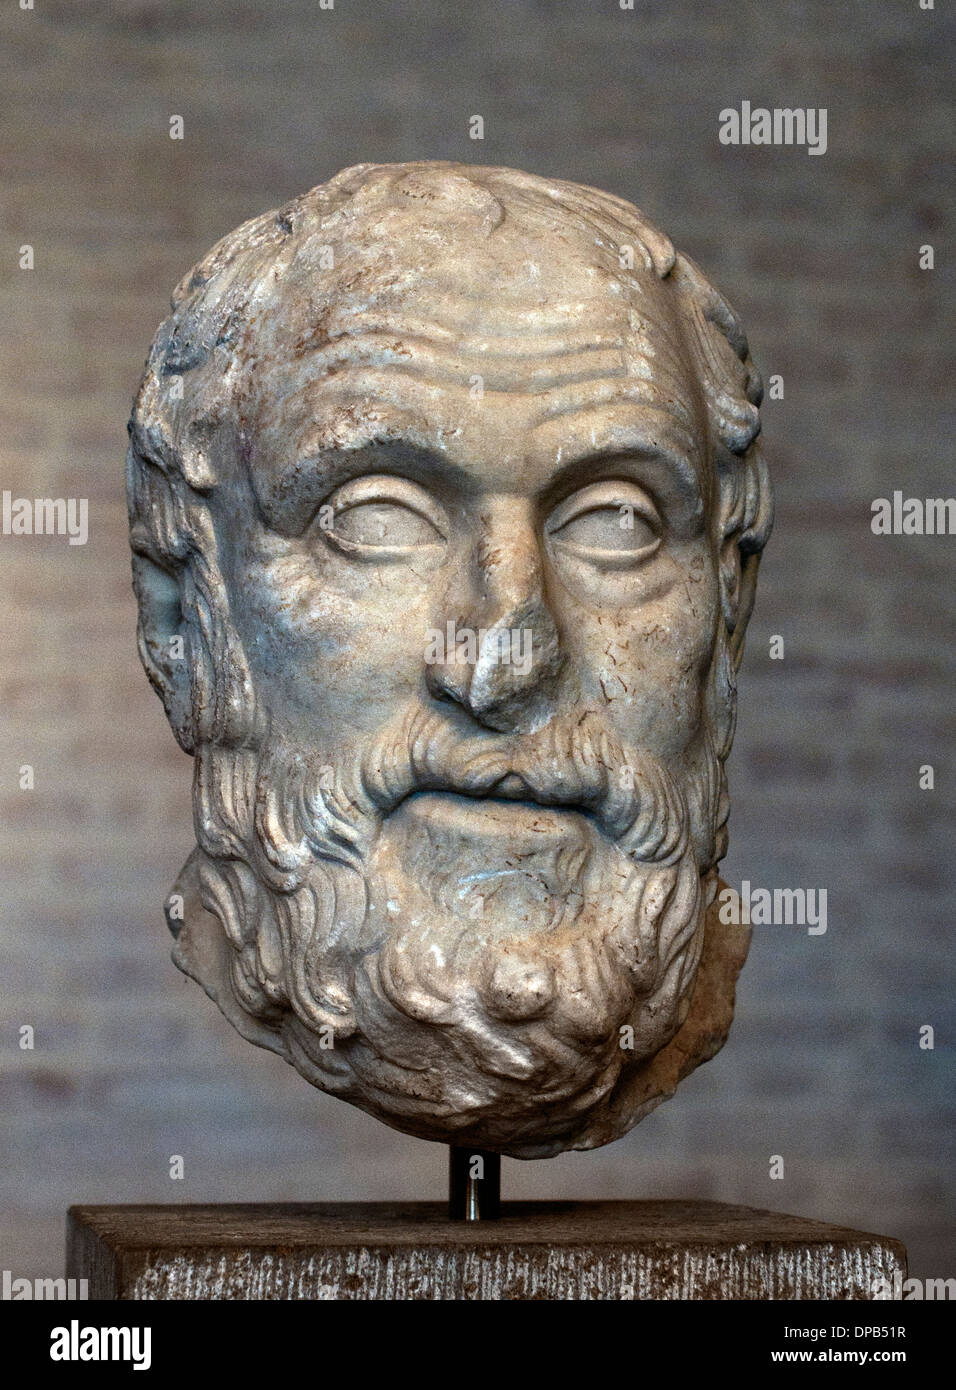 Carneades philosophe (215-129 av. J.-C.) copie romaine après la statue exposée sur le sit de l'agora grec Grèce Athènes BC150 Banque D'Images